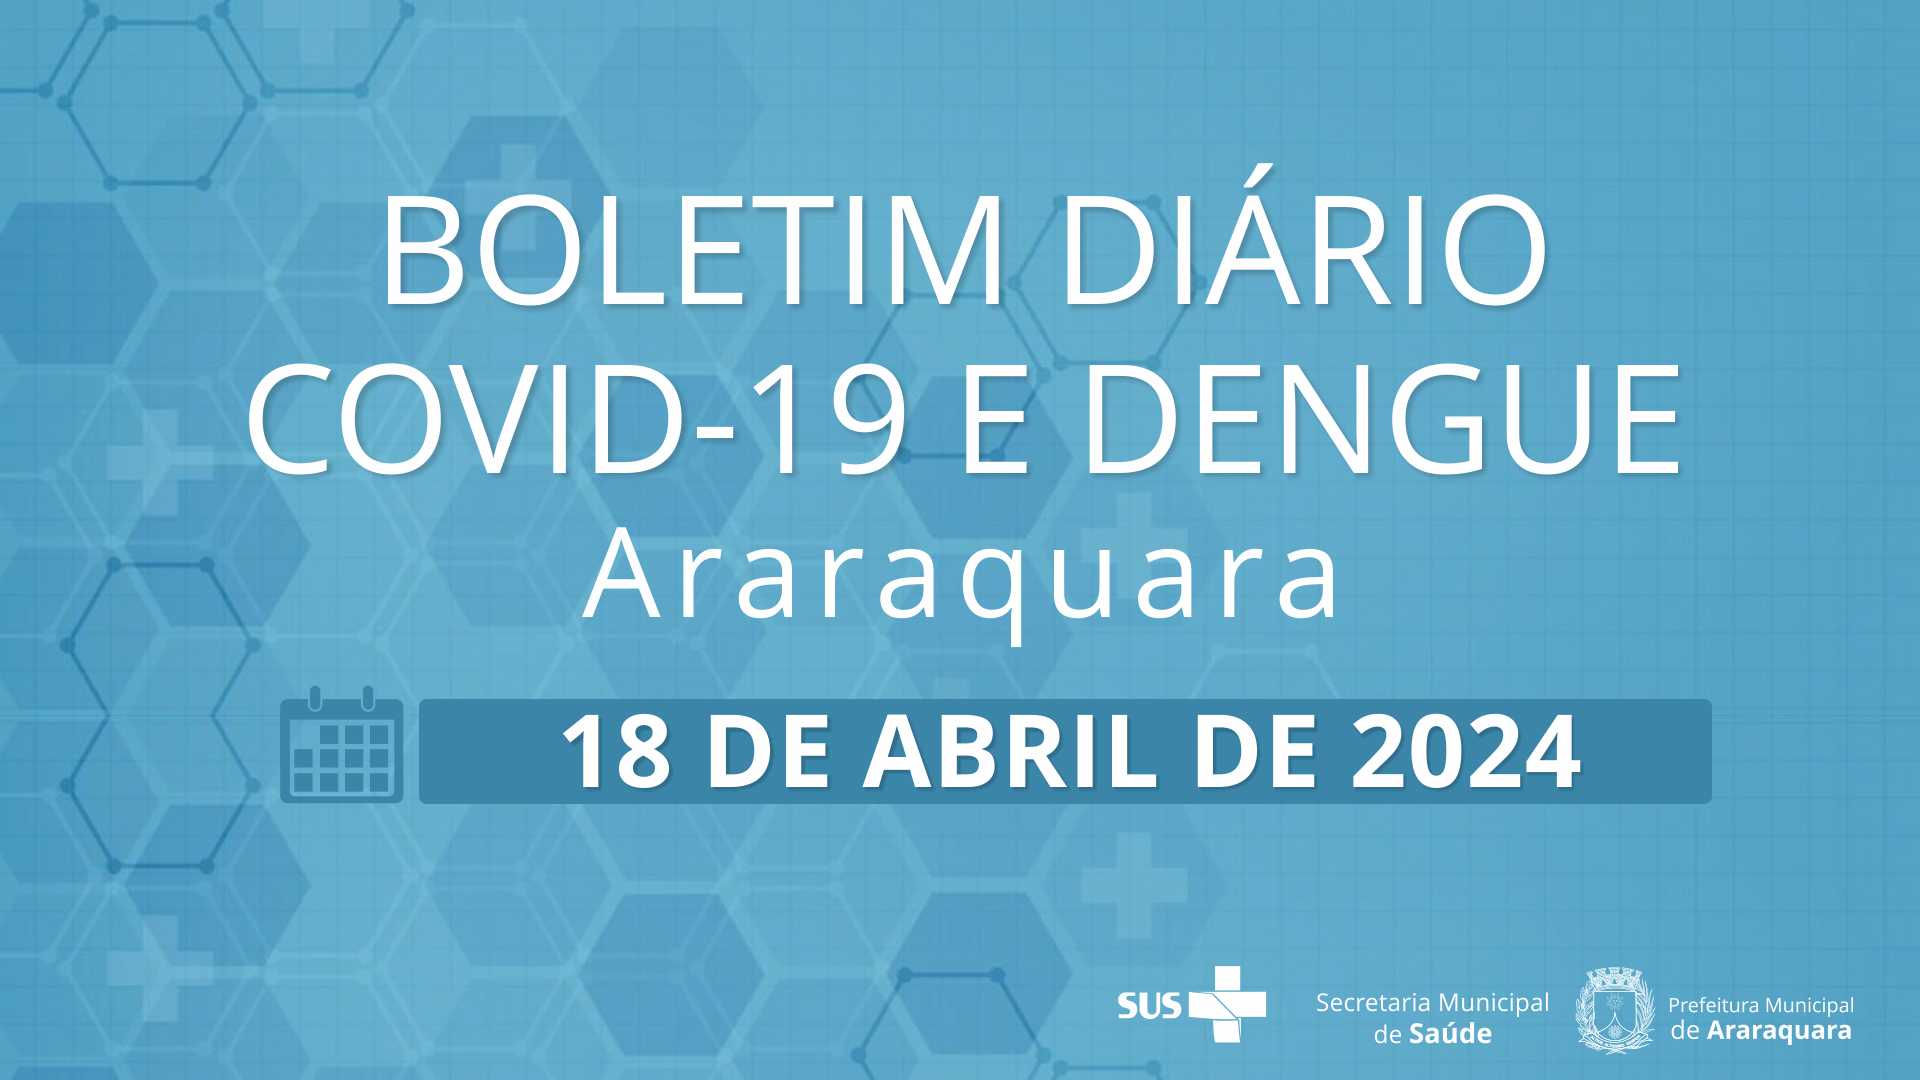 Boletim Diário no 38 – 18 de abril de 2024  -  Situação epidemiológica: Covid-19 e dengue em Araraquara